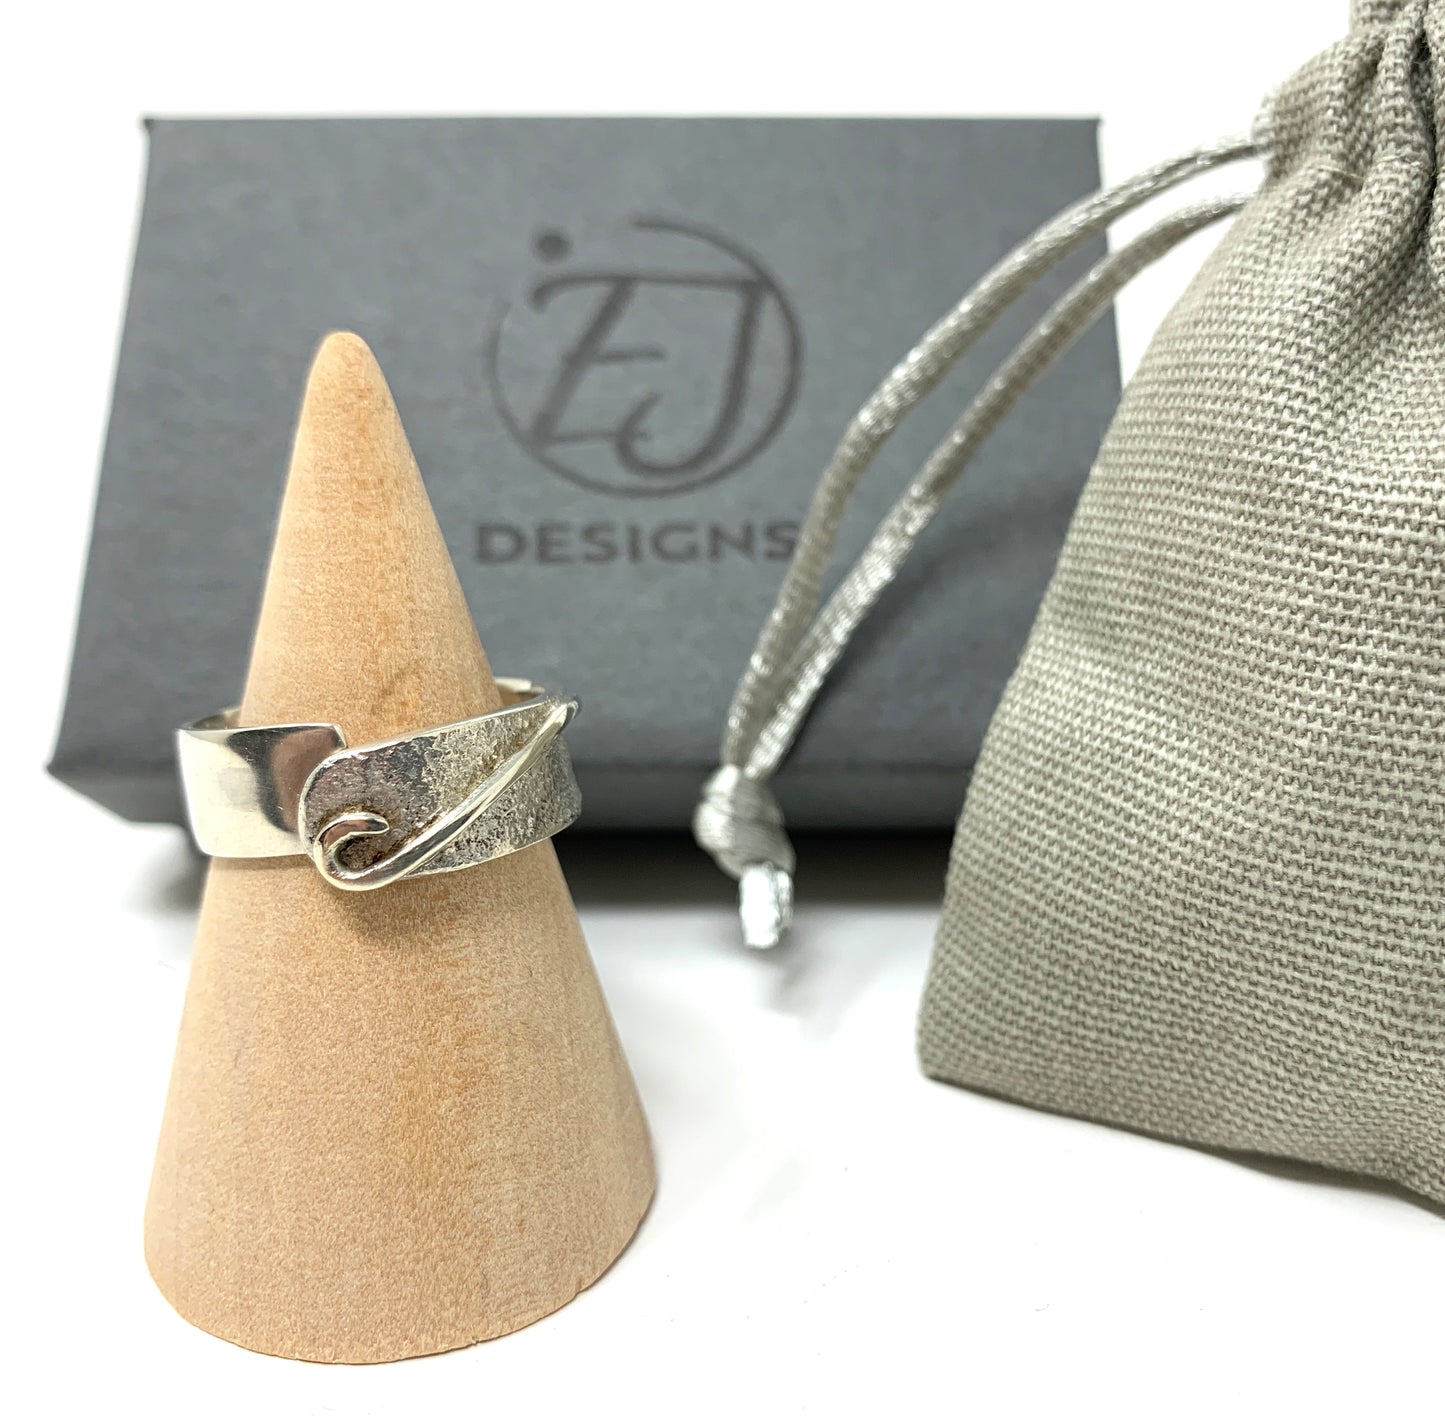 Silver Wrap Ring by Elizabeth James Designs